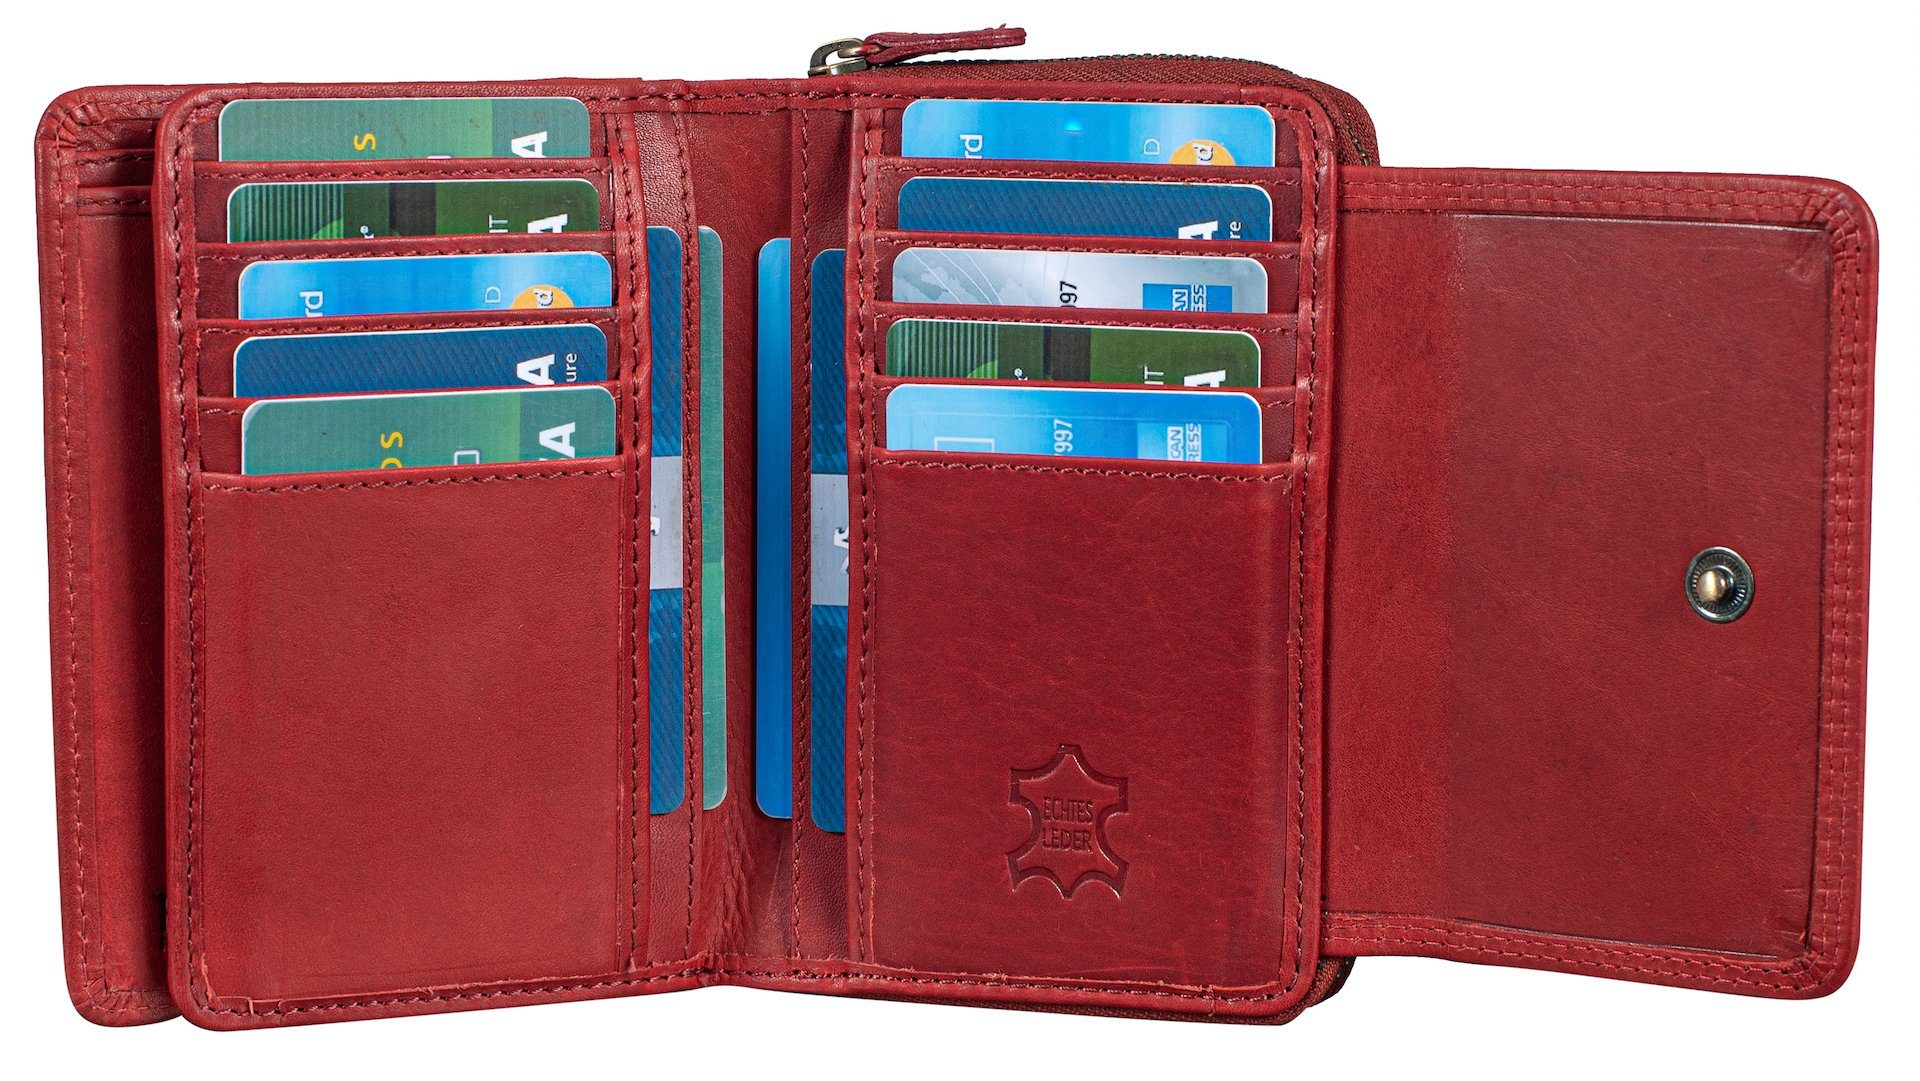 Benthill Geldbörse Damen Leder Geldbeutel Portemonnaie Echt Kartenfächer Münzfach 14 Rot Kartenfächer Reißverschlussfach RFID RFID-Schutz Frauen